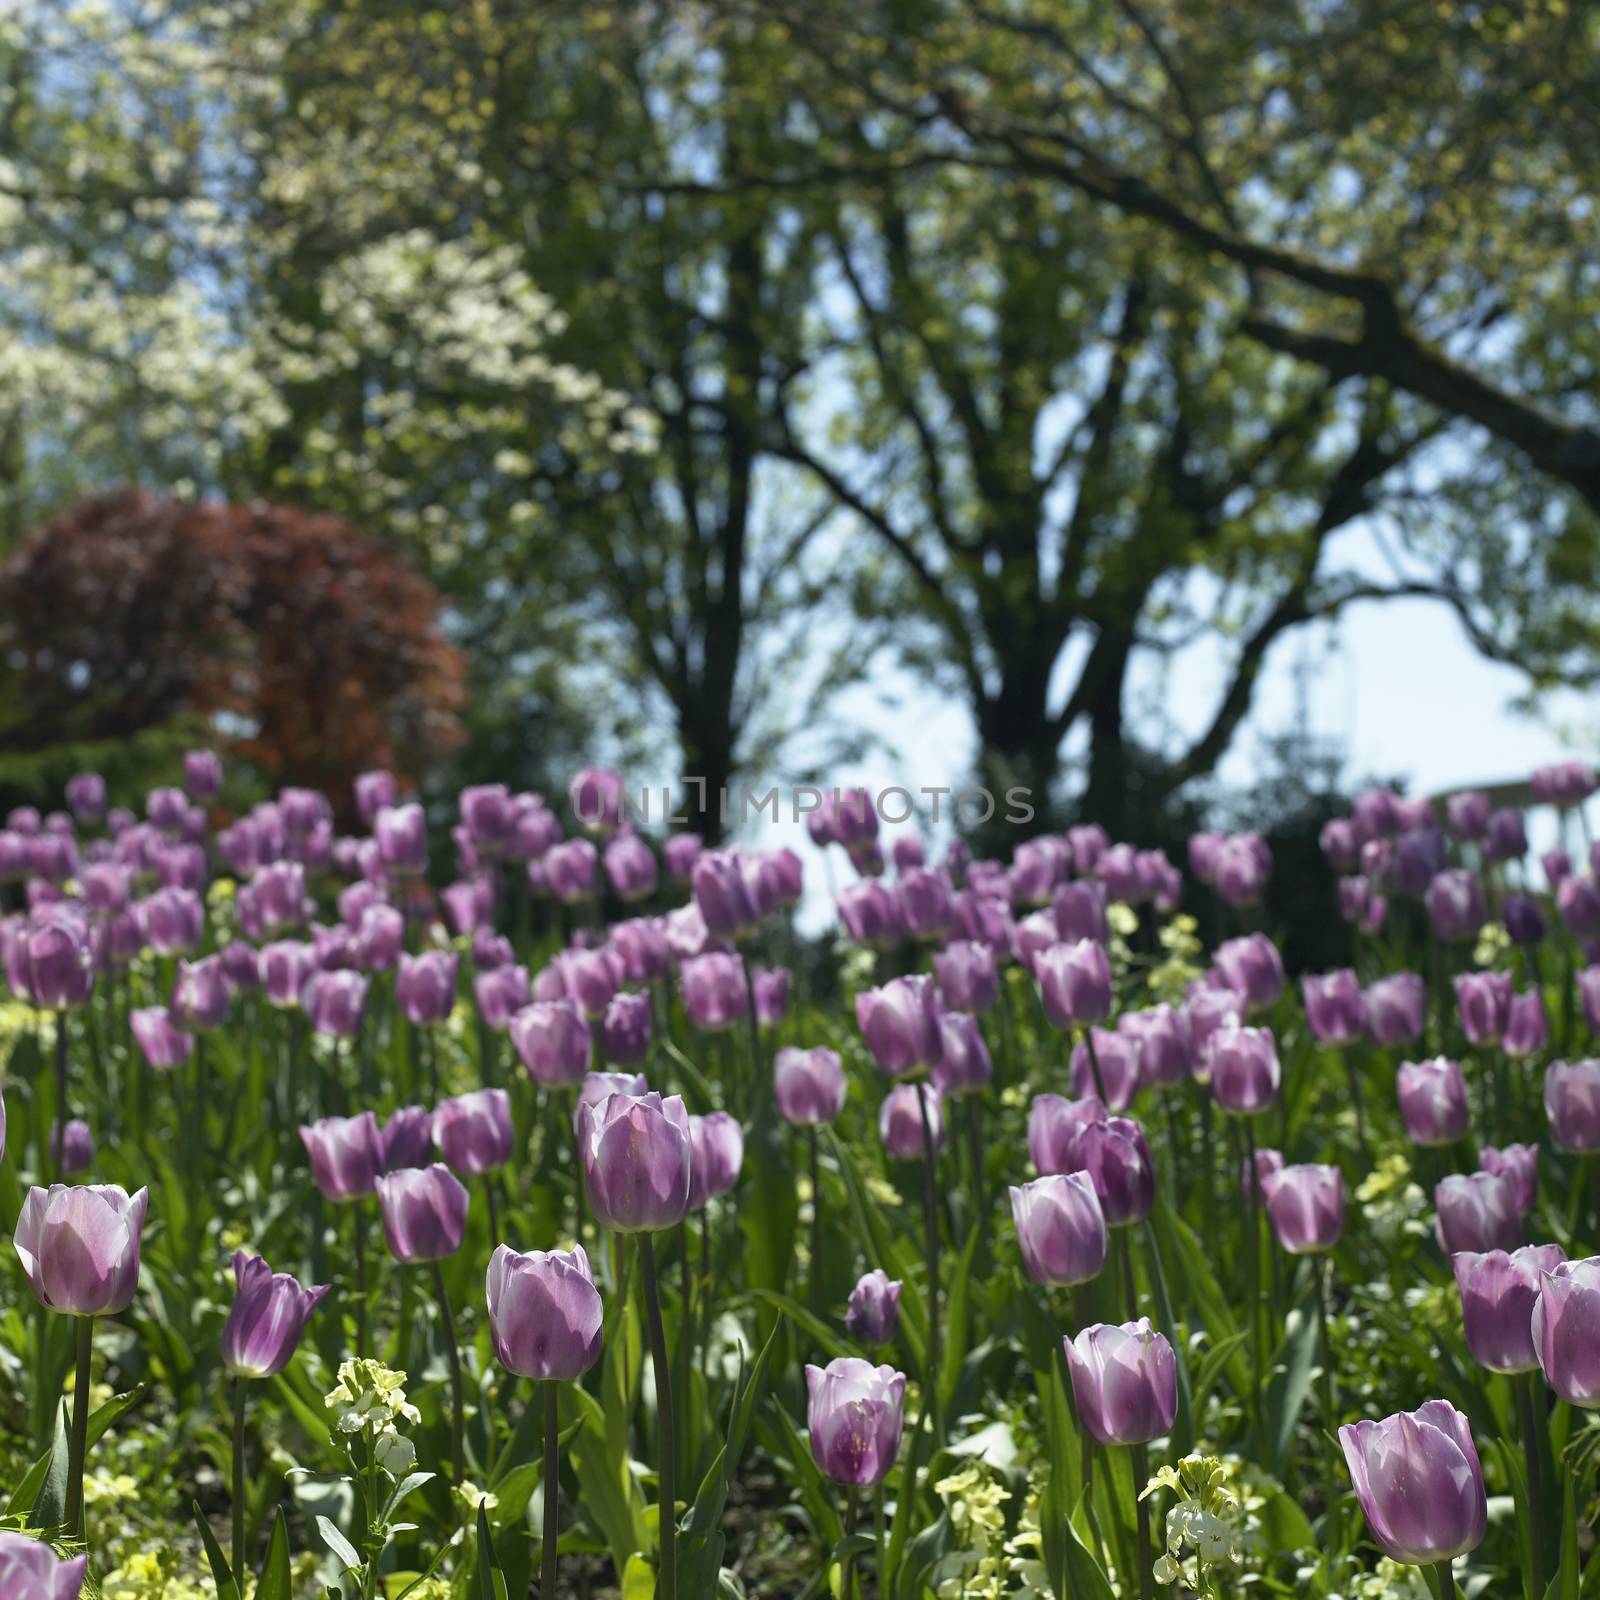 Purple tulips by mmm